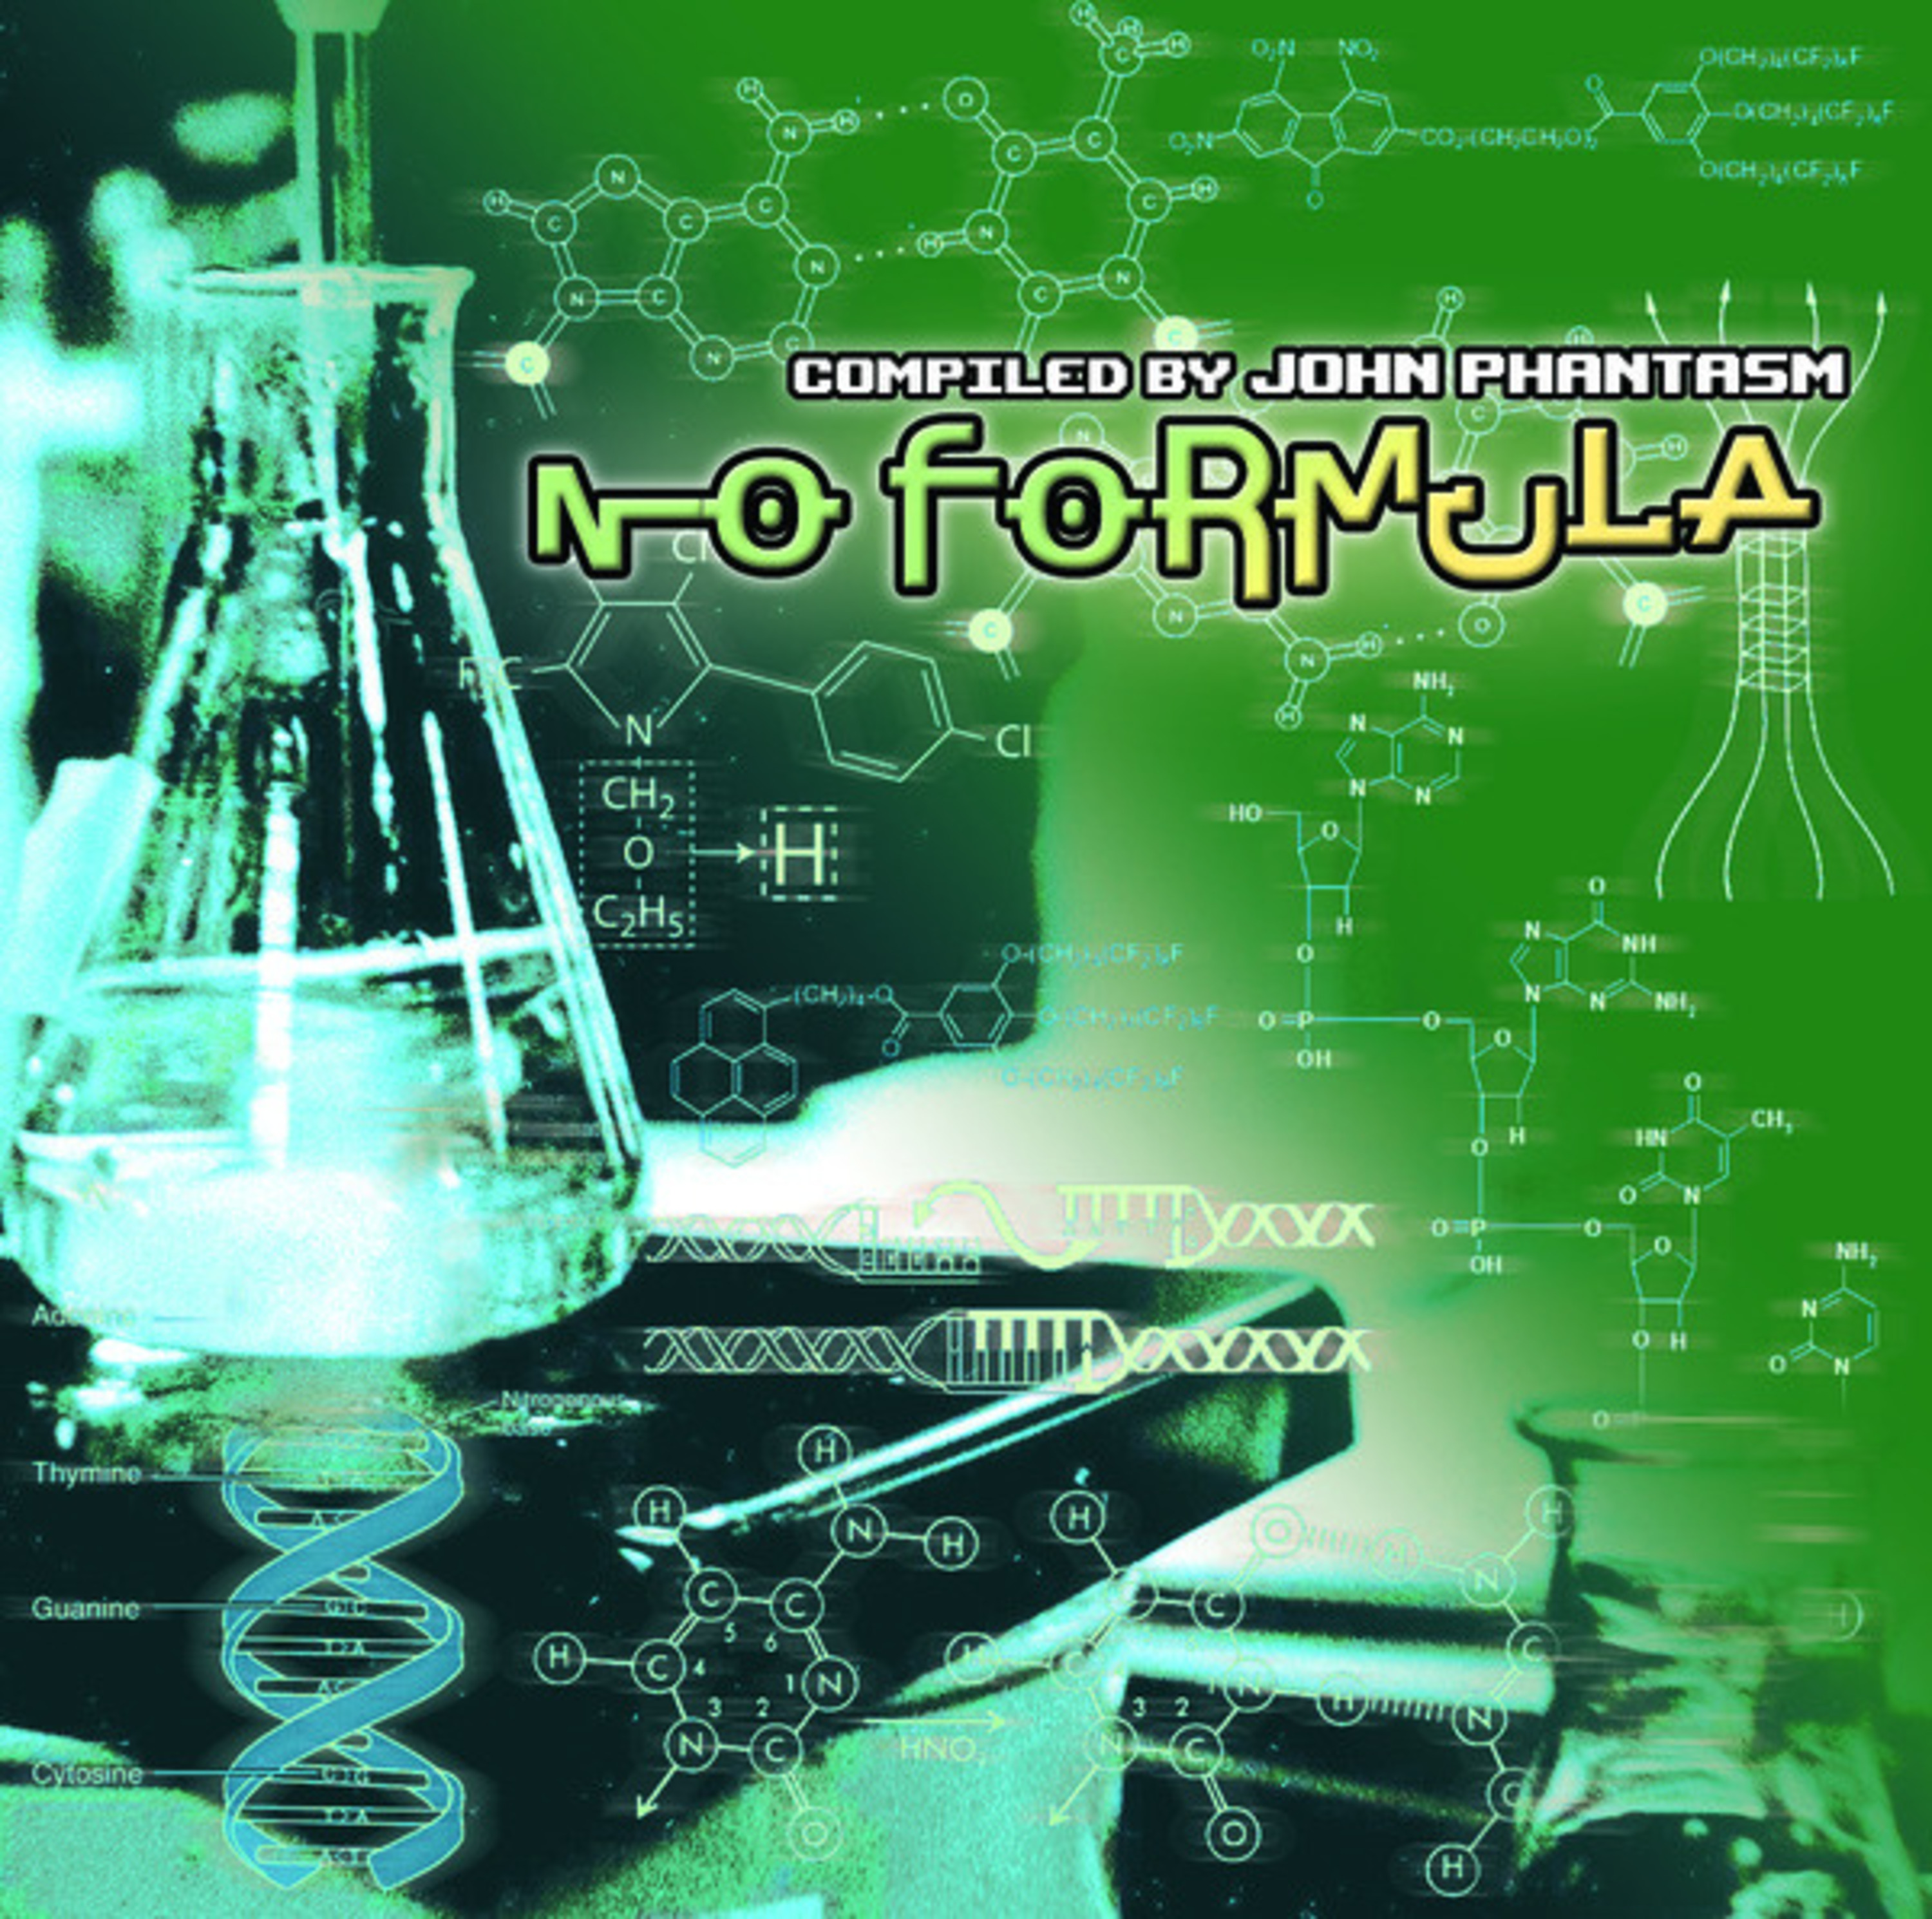 No Formula - compiled by John Phantasm